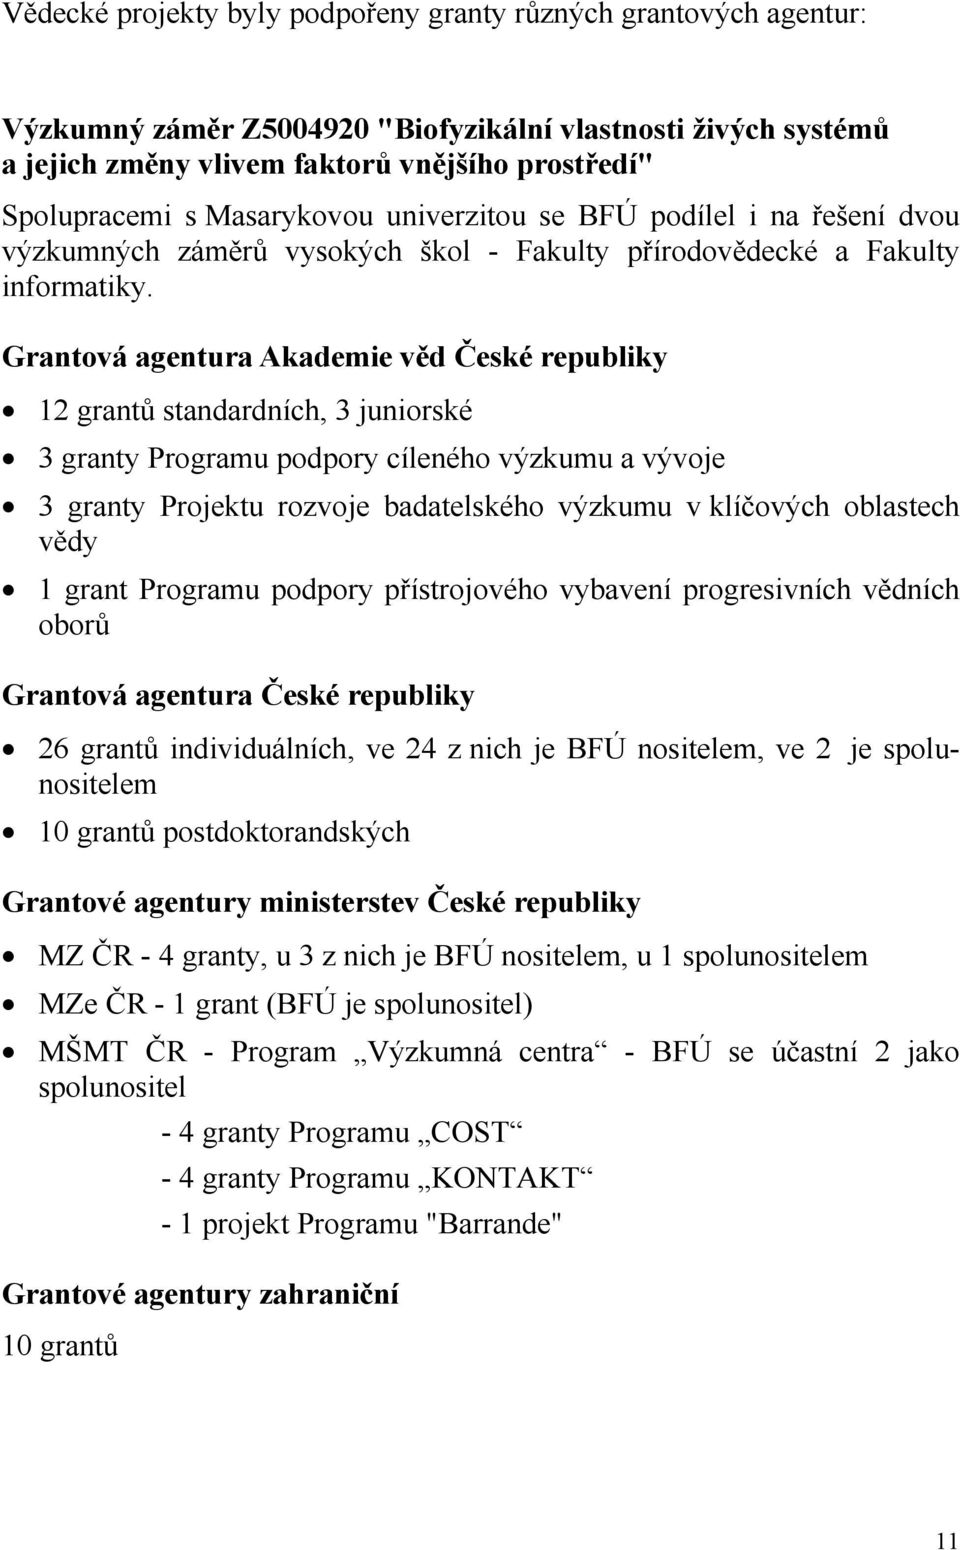 Grantová agentura Akademie věd České republiky 12 grantů standardních, 3 juniorské 3 granty Programu podpory cíleného výzkumu a vývoje 3 granty Projektu rozvoje badatelského výzkumu v klíčových